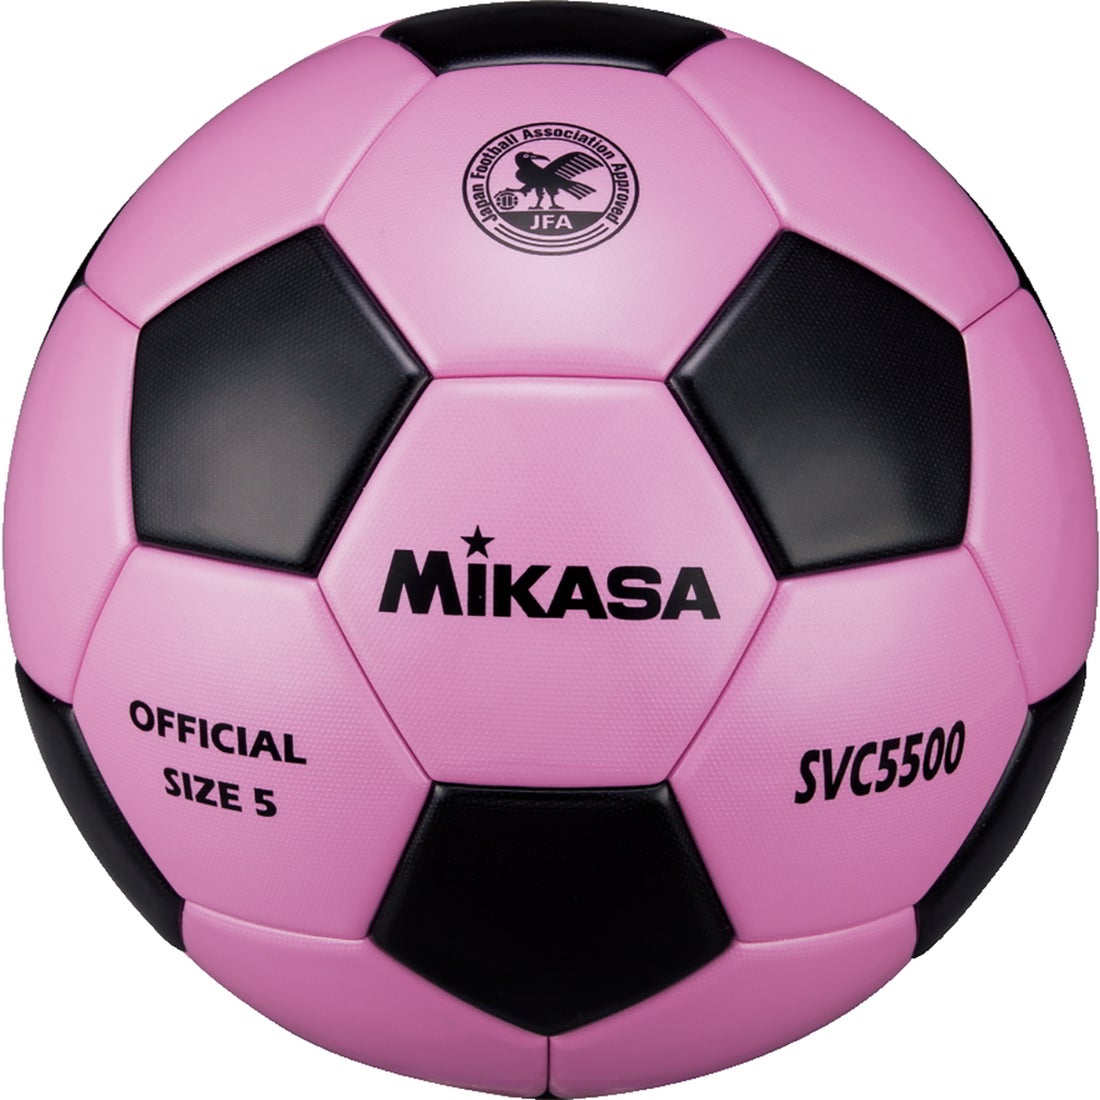 MIKASA ミカサ サッカーボール 検定球5号球(ピンク×ブラック) SVC5500-PBK ピンク×ブラック サッカー ボール -サッカー ショップ【SWS】